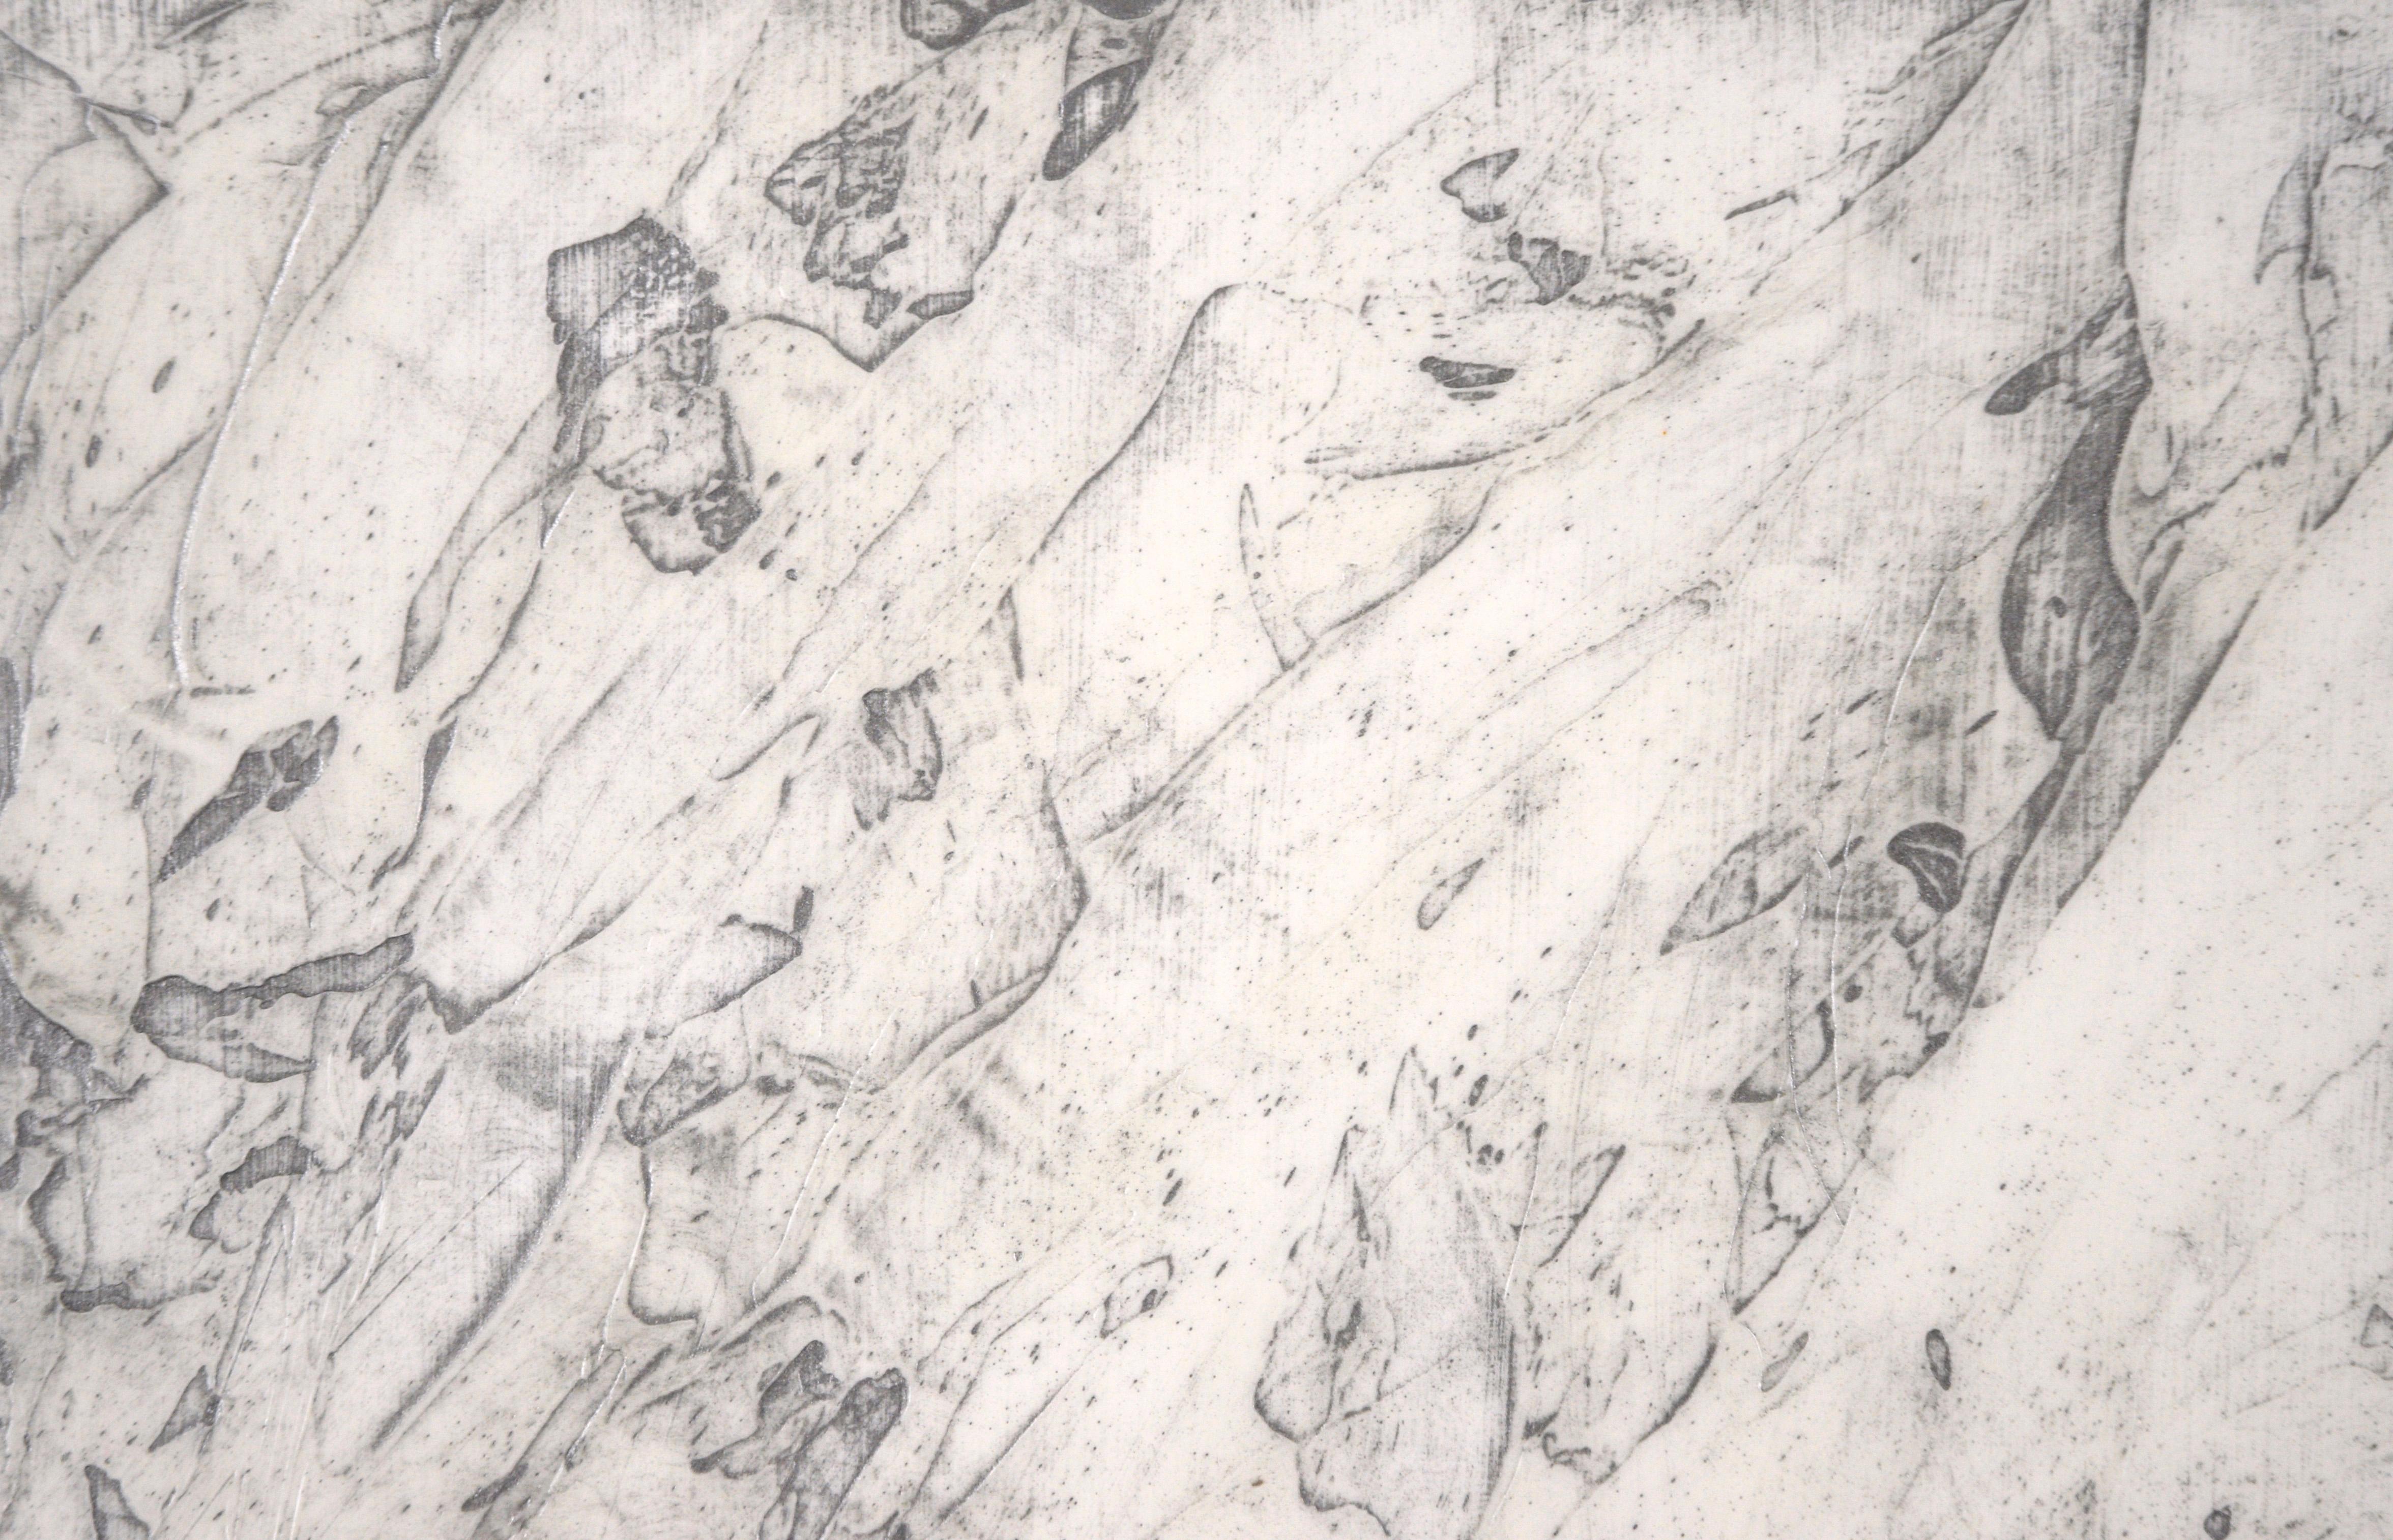 Schwarz-weißes Triptychon - Texturierte, abstrakte, minimalistische, Komposition

Minimalistische Texturkomposition von Karen M. Shimoda (Amerikanerin, geb. 1951). Jedes Stück hat eine andere Textur, Oberflächenbehandlung und einen anderen Grad an